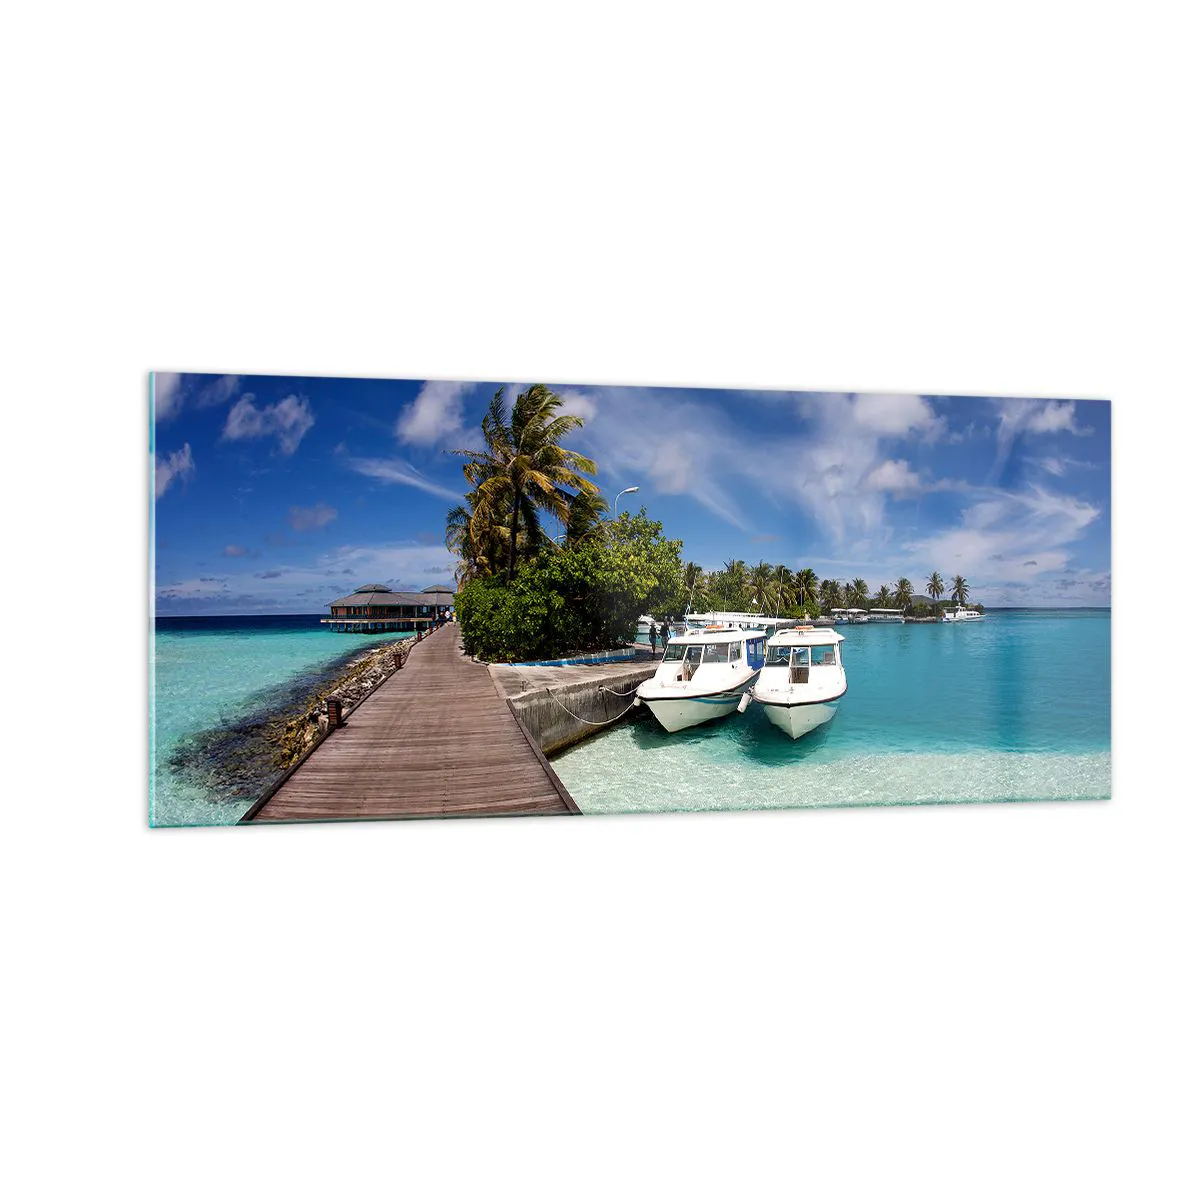 Cuadro sobre vidrio, Impresiones sobre Vidrio Arttor 100x40 cm - Y sin embargo el paraíso existe - Paisaje, Paraíso, Mar, Maldivas, Viajes, Para el salón, Para el dormitorio, Azul, Horizontal, Vidrio, GAB100x40-0436